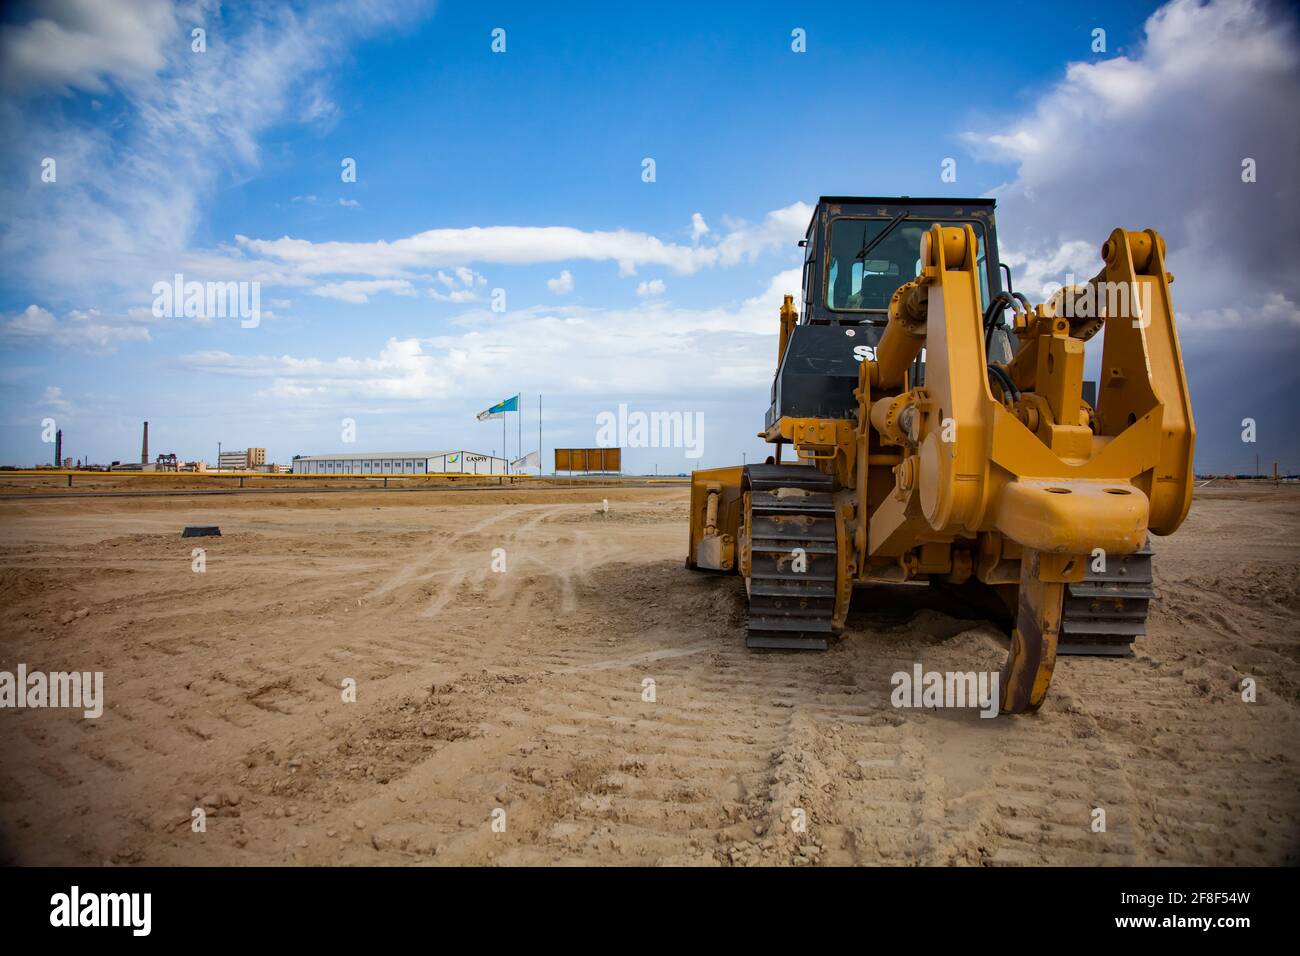 Aktau, Kazakhstan. Développement de la zone économique libre. Préparation à la construction du port maritime. Le bulldozer aplatit la surface du sol. Banque D'Images